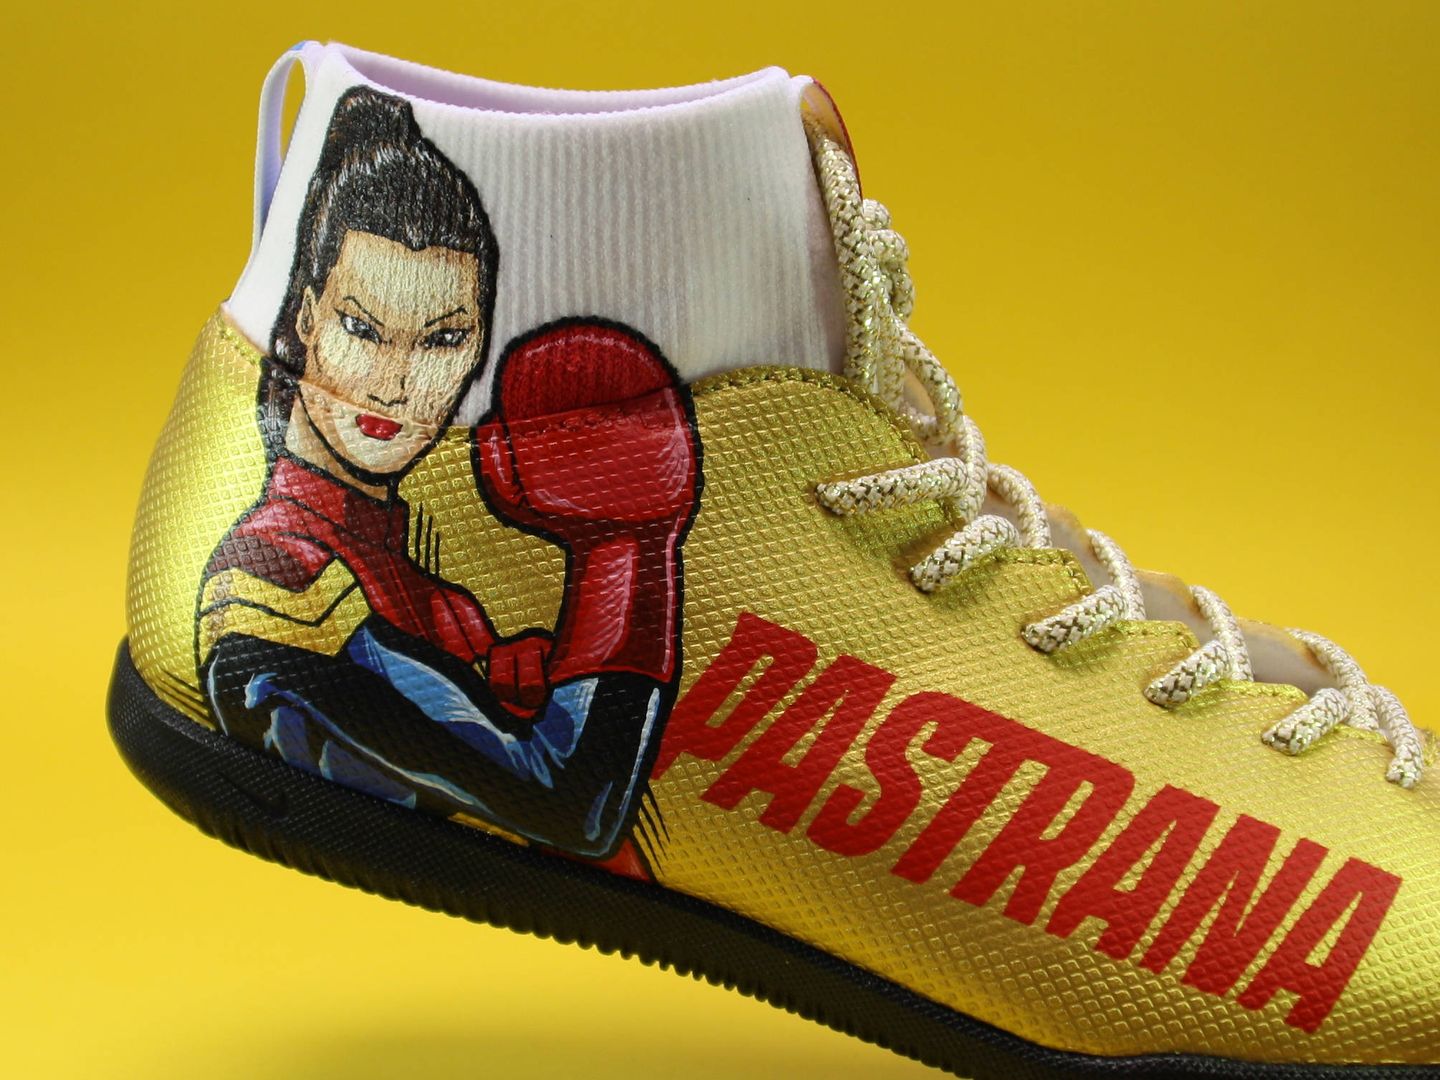 Detalle de las zapatillas que calzará Joana Pastrana en su combate de este sábado. (Foto: MelonKicks)